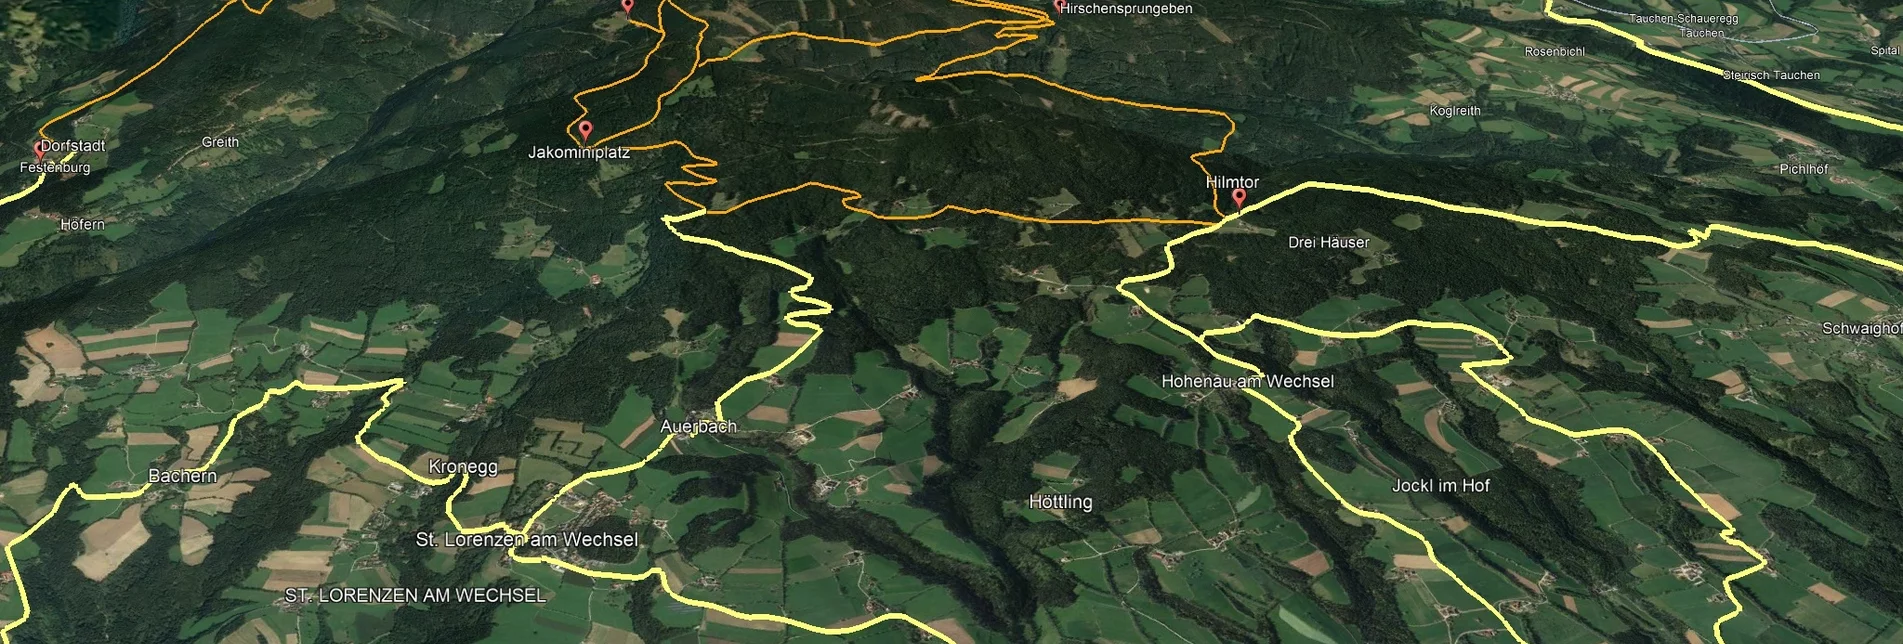 Mountain Biking PREVIEW Styrian Wexl Trails - Thalberger Schwaig Route - Touren-Impression #1 | © Verein Tourismusentwicklung Steirischer Wechsel